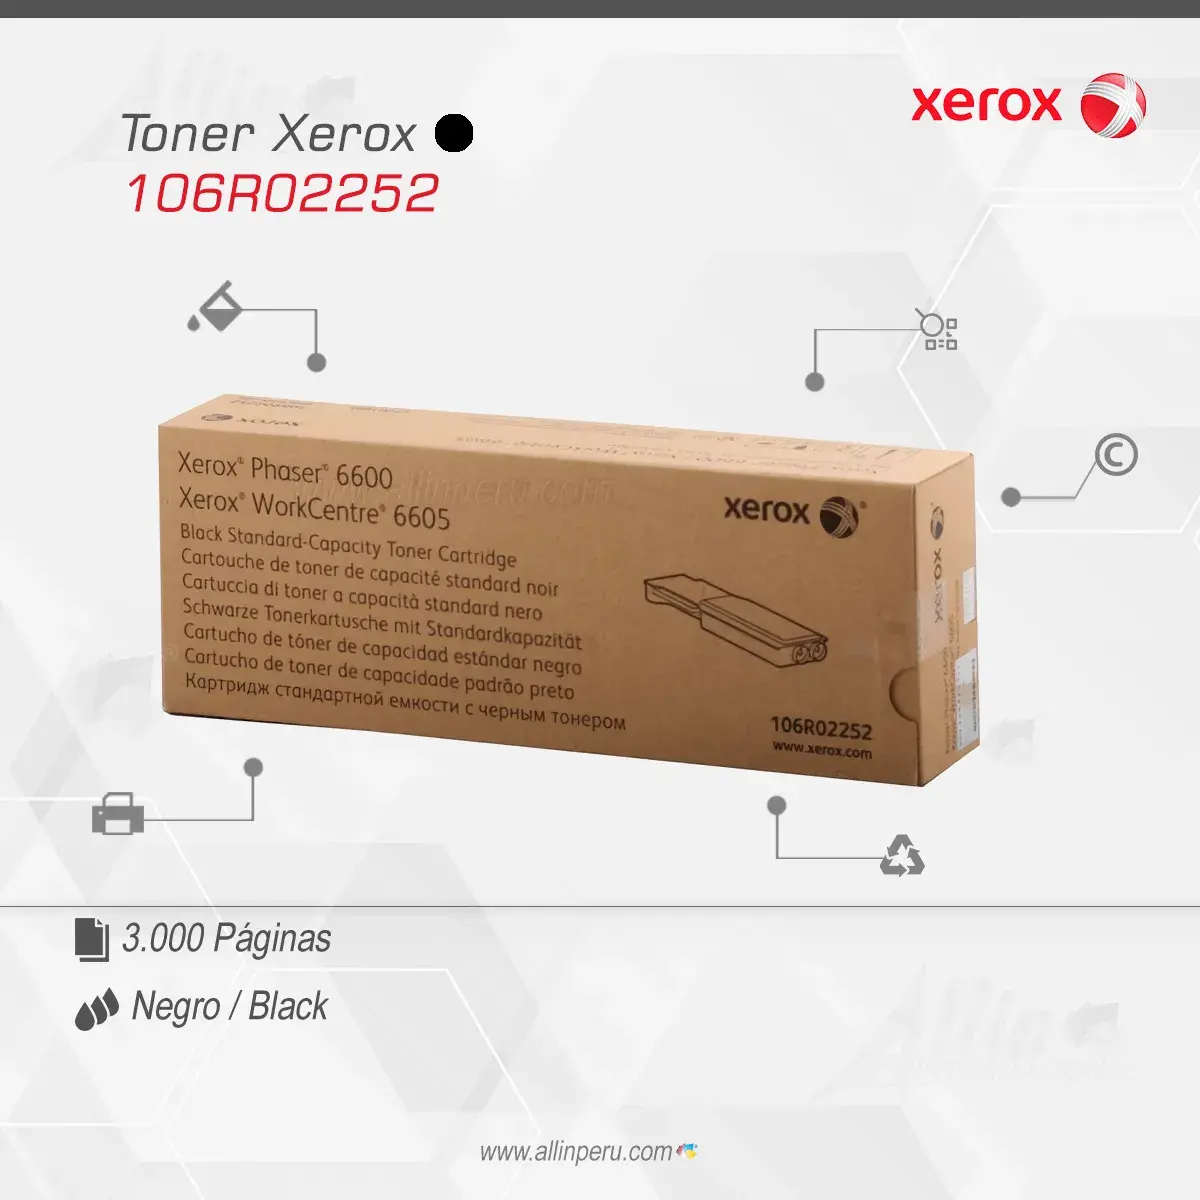 Tóner Xerox 106R02252 este cartucho está hecho para impresoras Phaser 6600